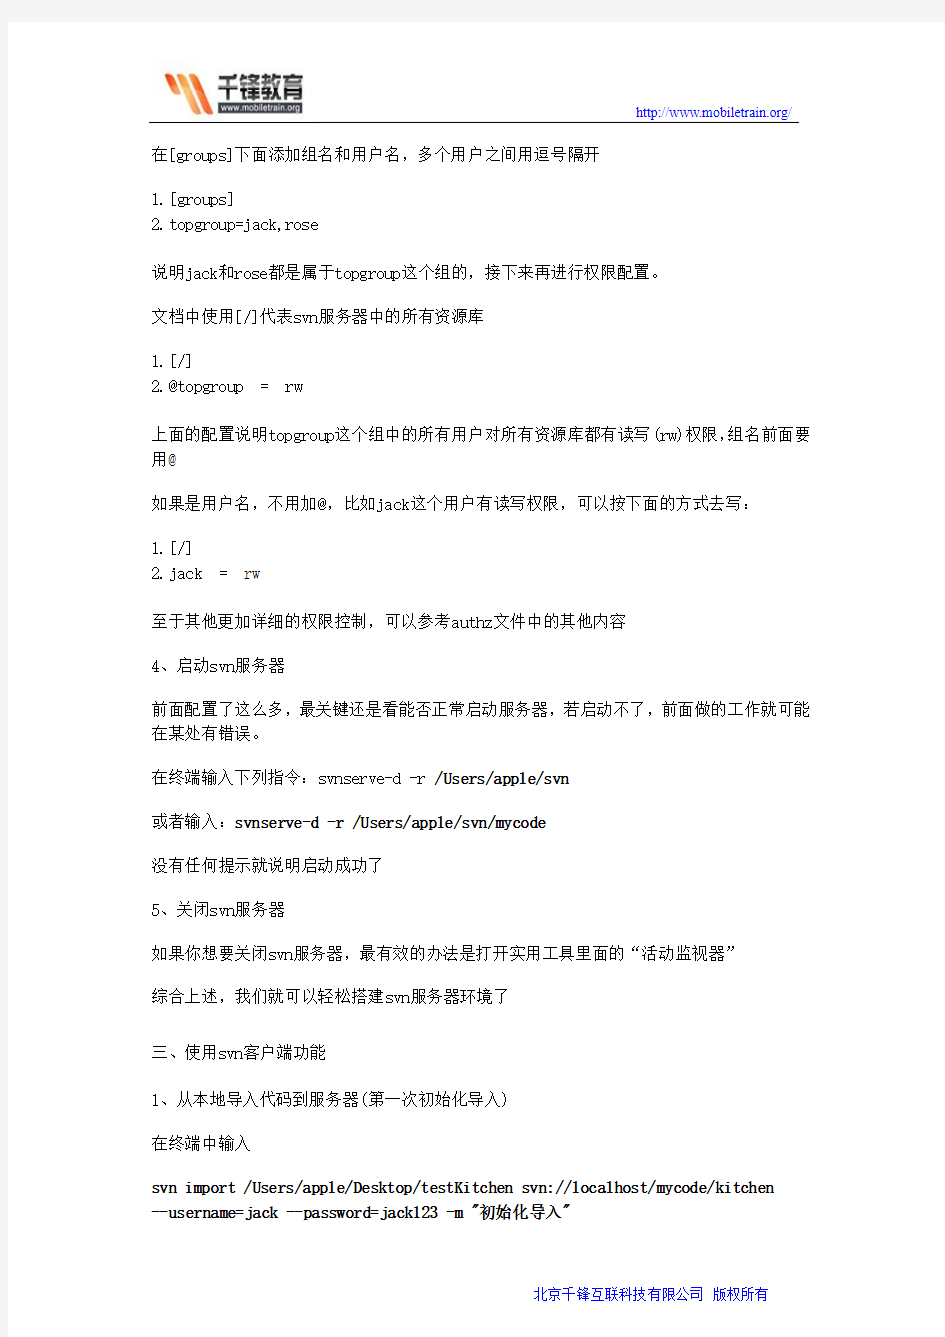 上海ios培训Mac环境下svn的使用